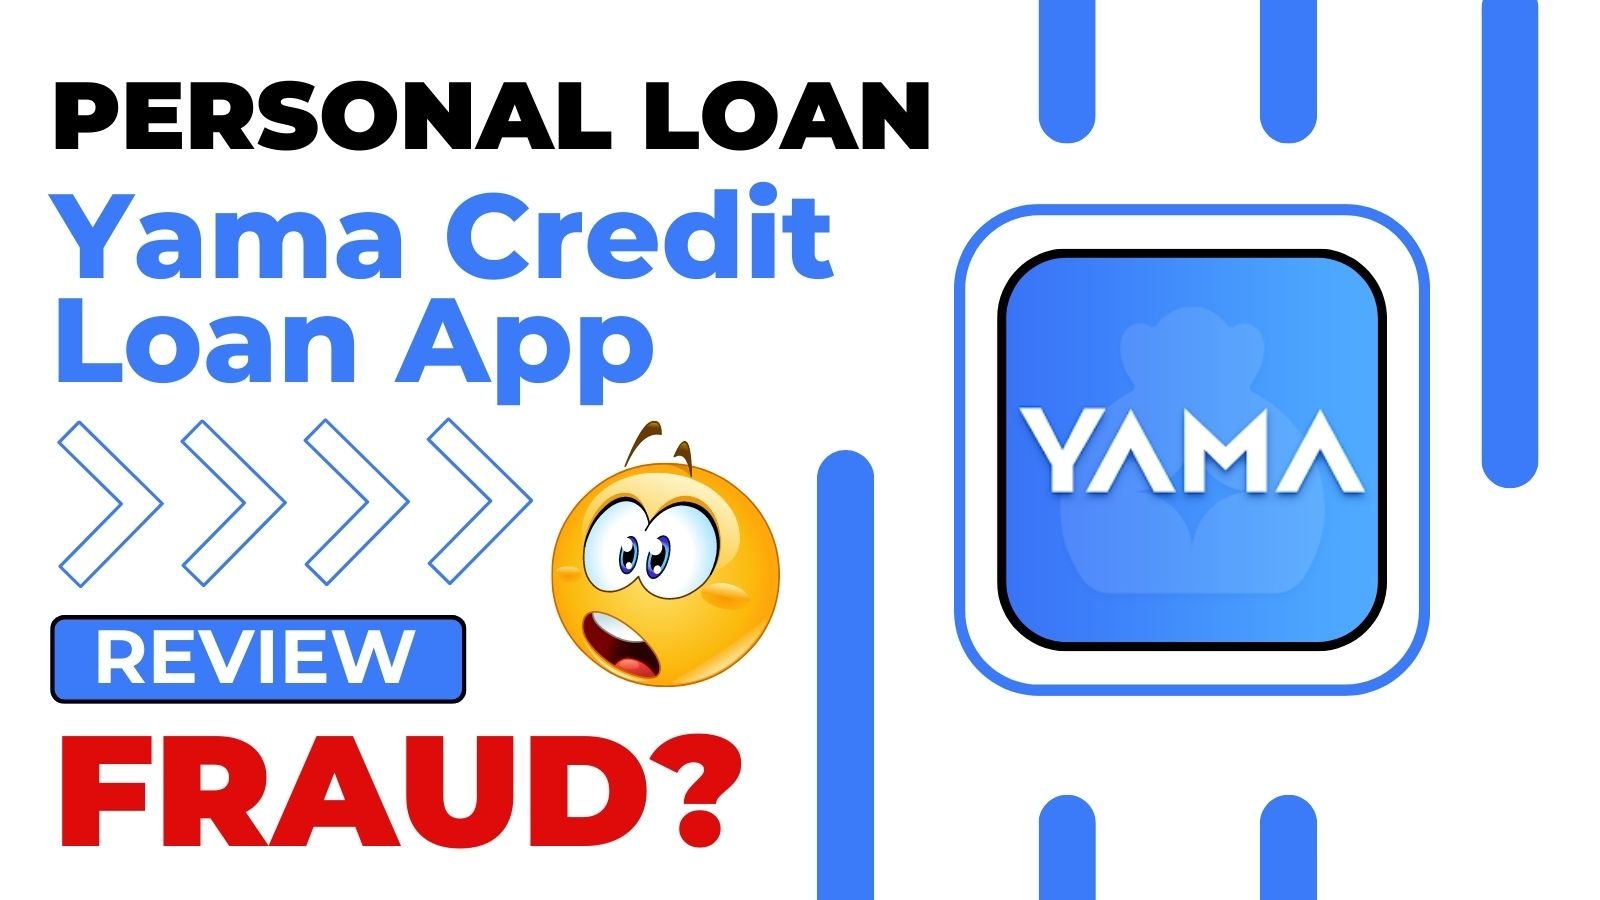 Yama Credit Loan App Review